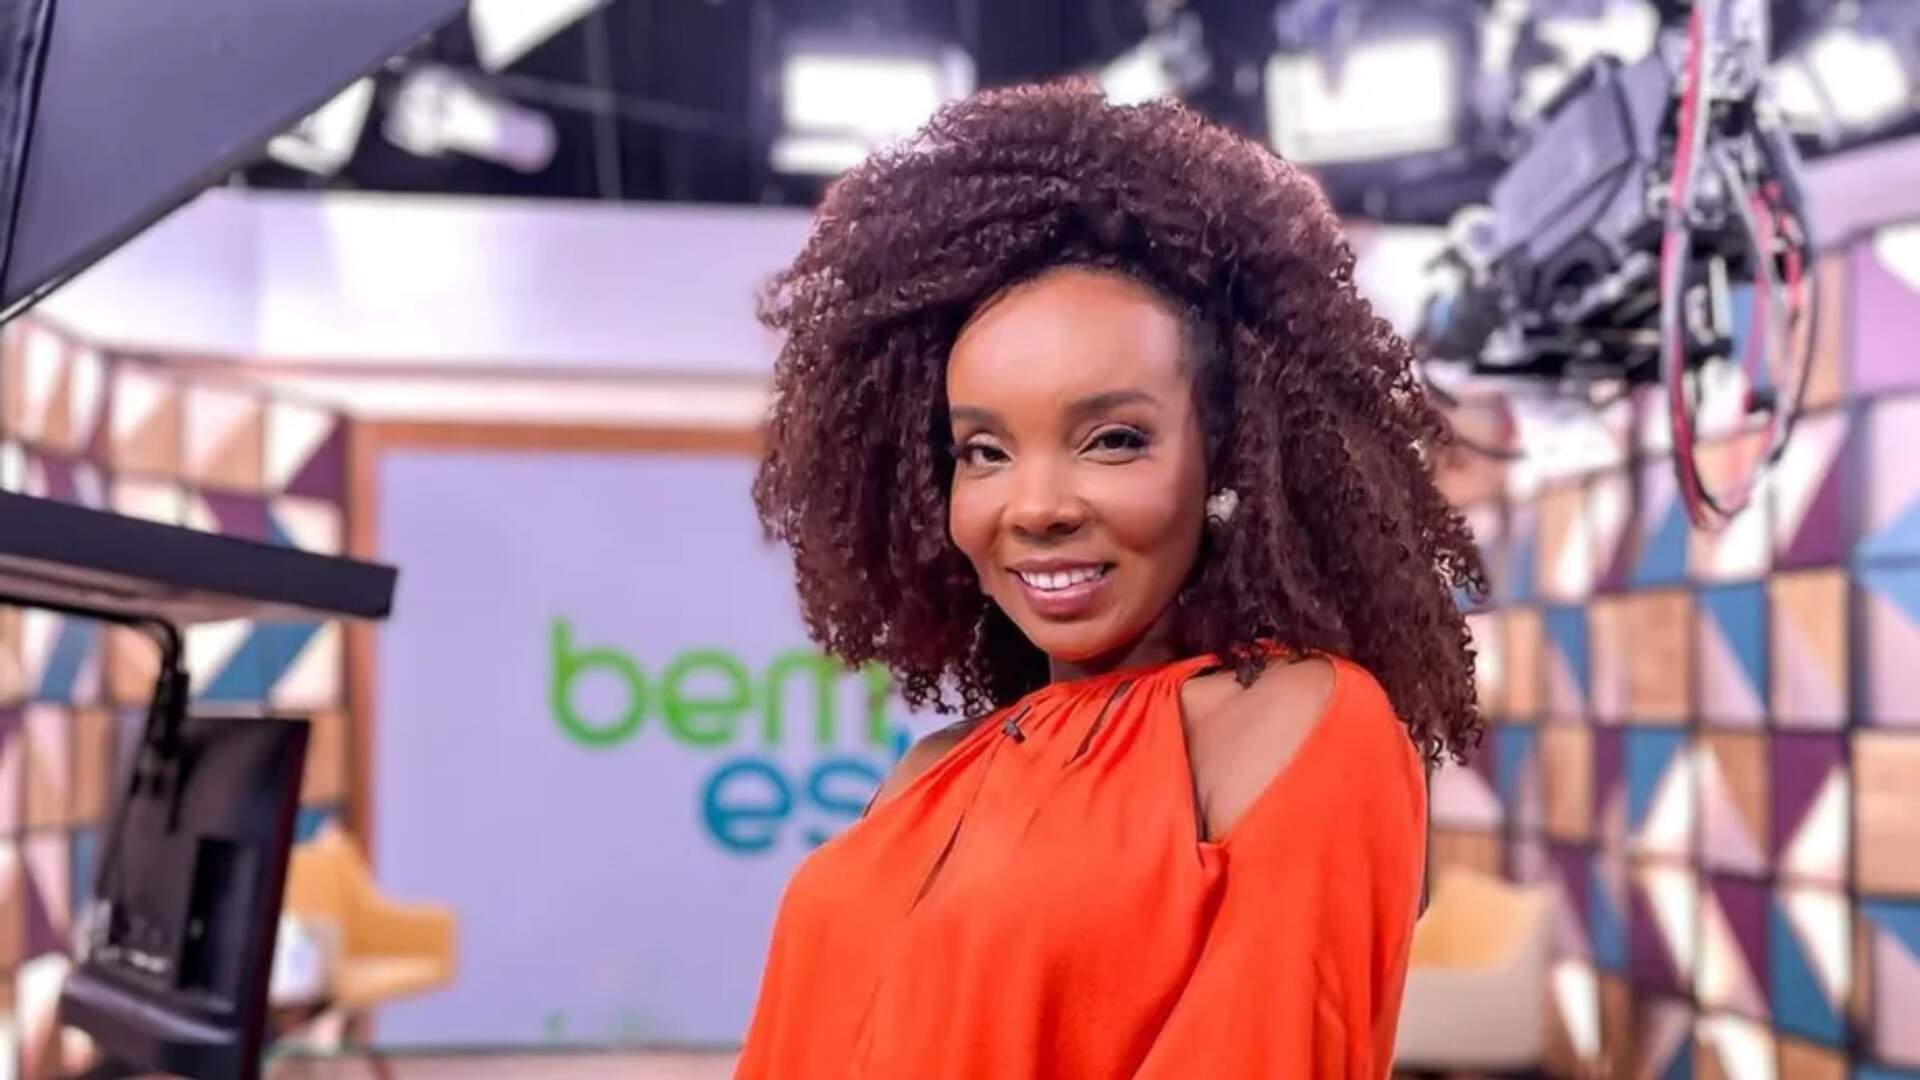 Campeã do ‘BBB 20’, Thelma Assis abre o jogo sobre como usou o prêmio de R$1,5 milhão: “Vivi com 300 reais” - Metropolitana FM